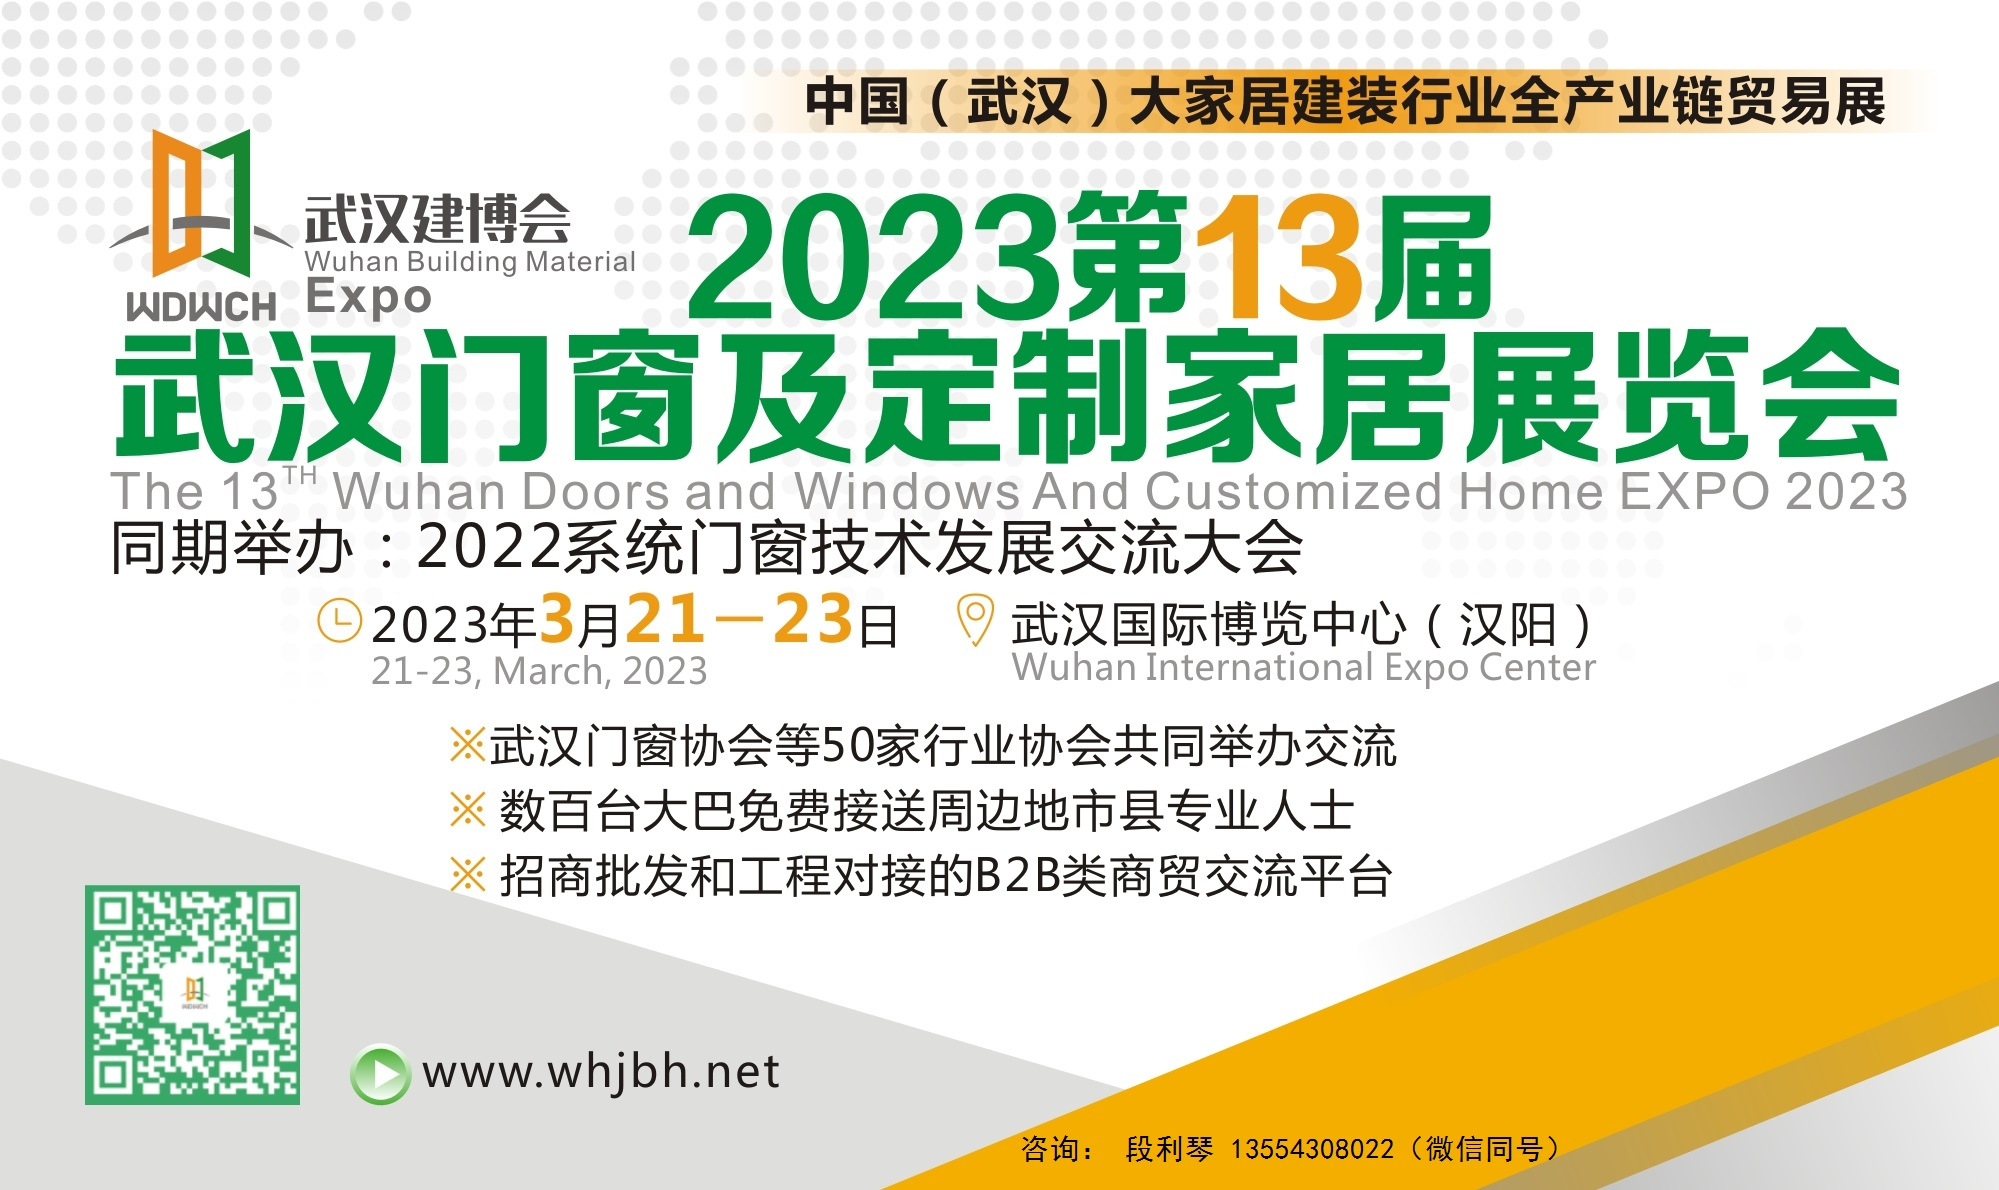 第14届武汉门窗及定制家居展览会将于2023年3月举办